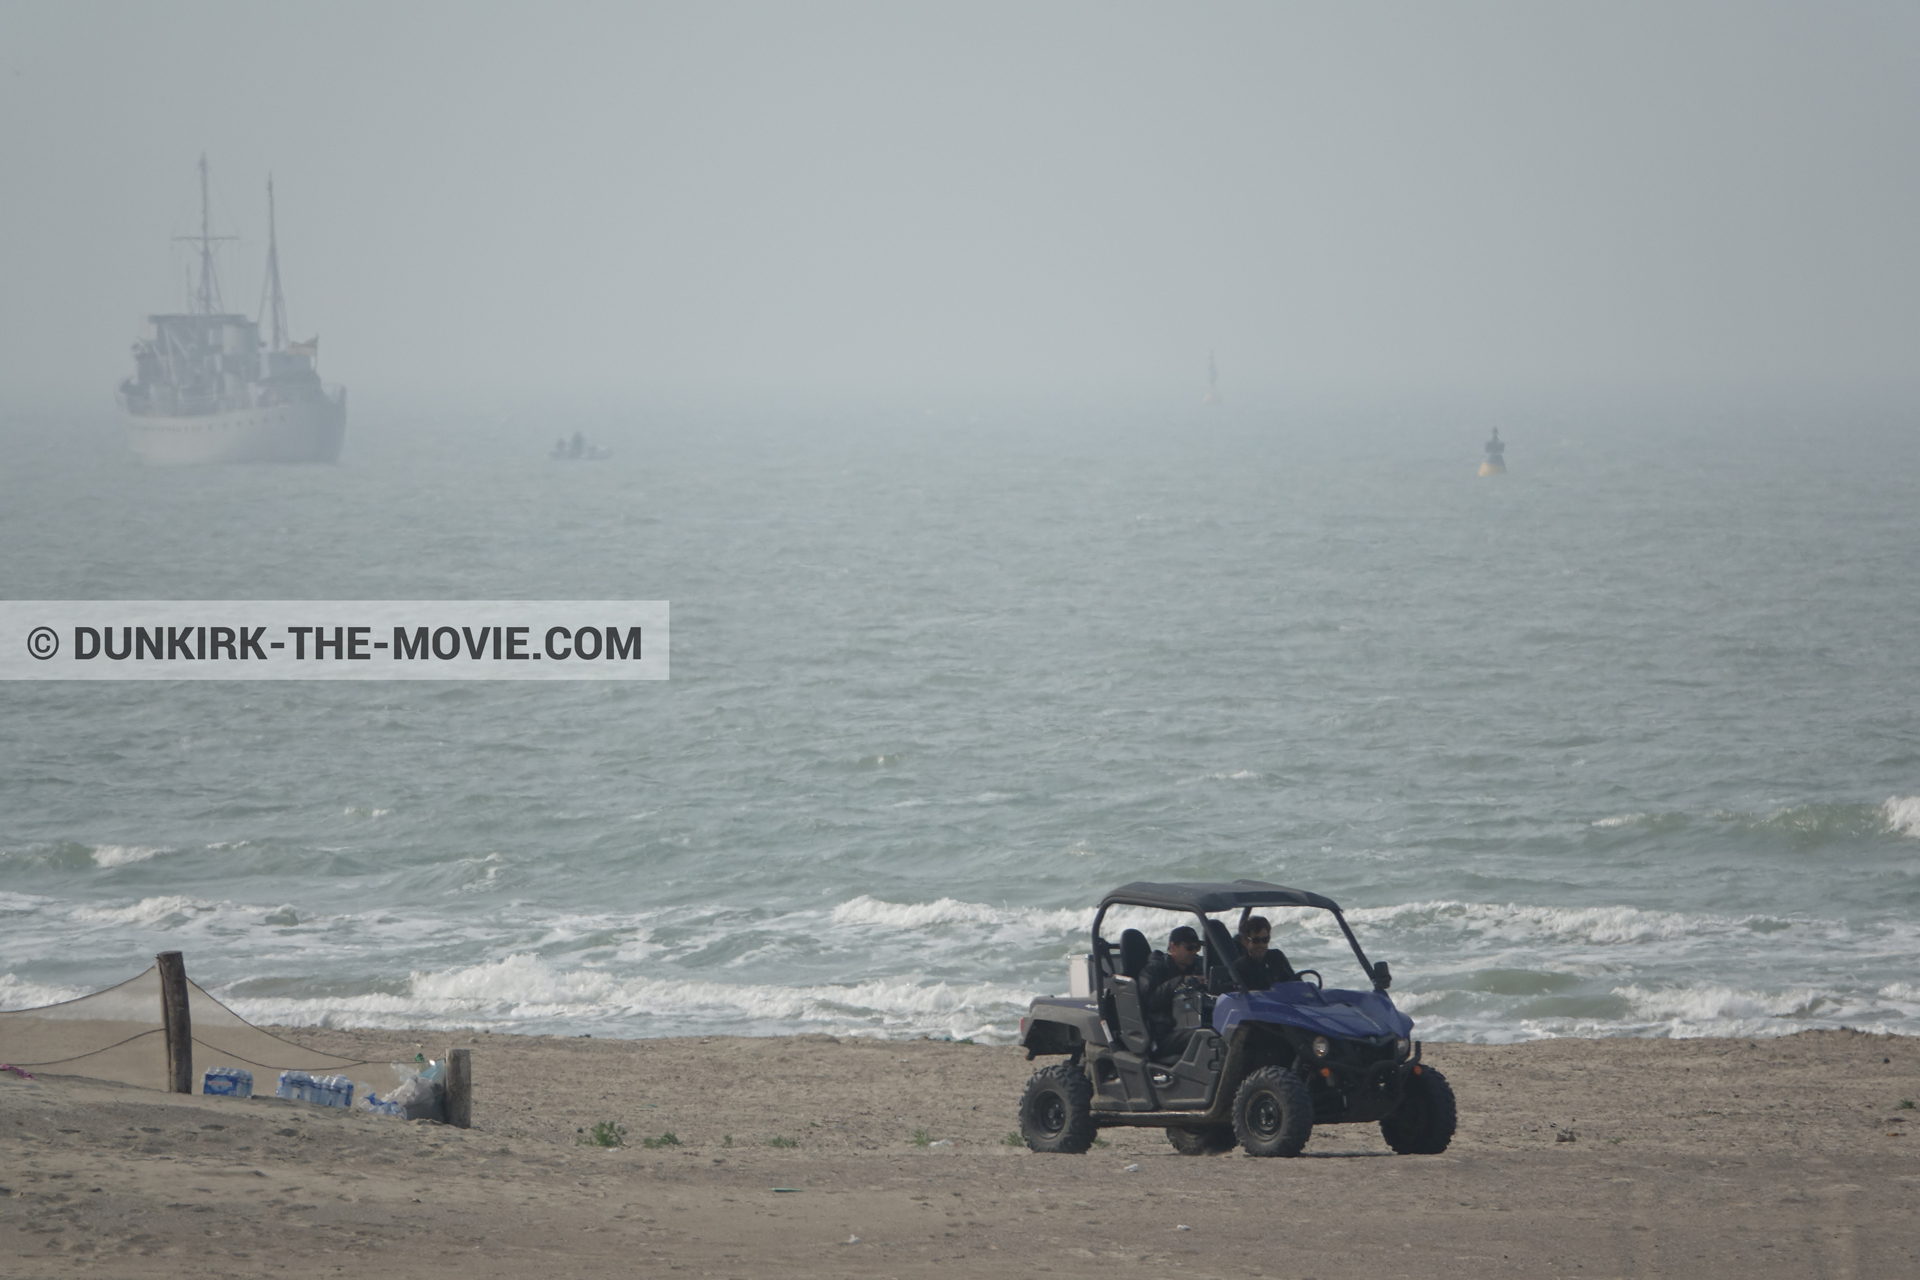 Fotos con barco, mares agitados, playa, equipo técnica,  durante el rodaje de la película Dunkerque de Nolan